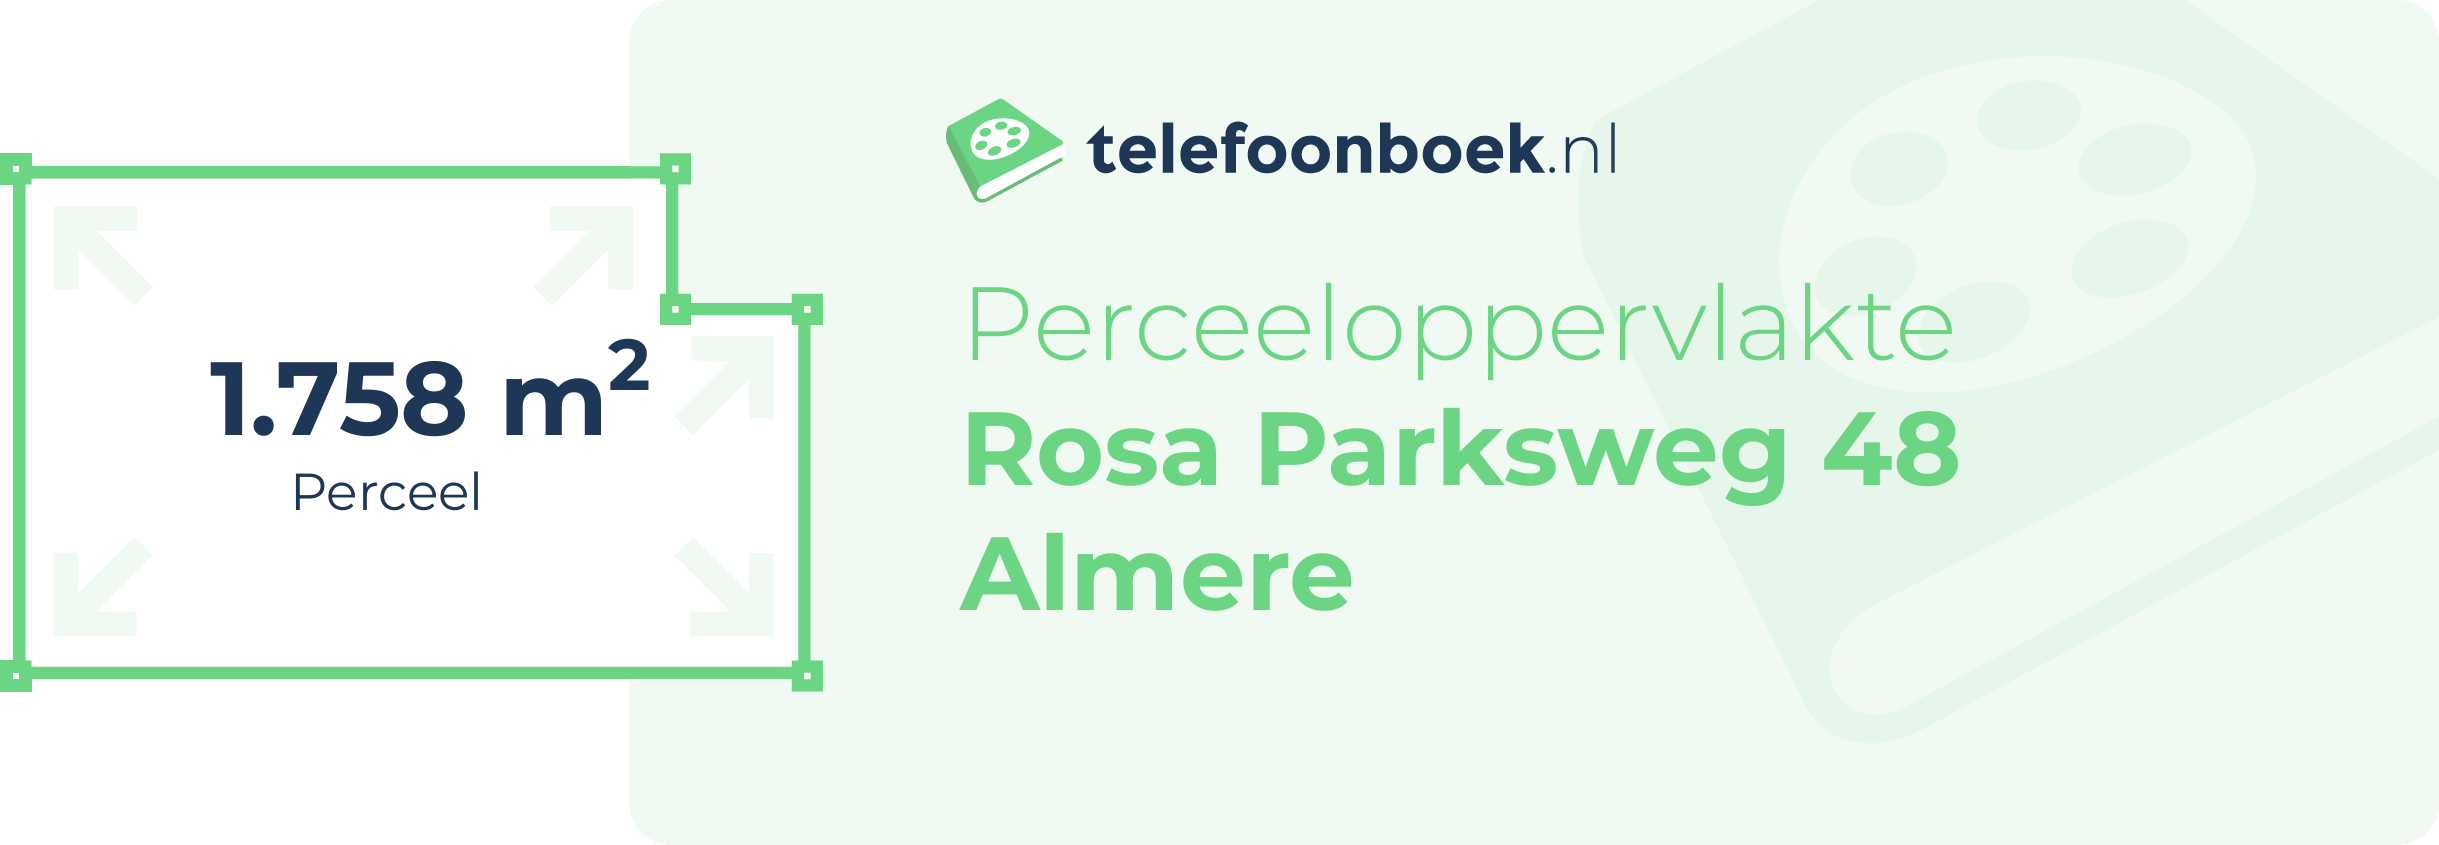 Perceeloppervlakte Rosa Parksweg 48 Almere